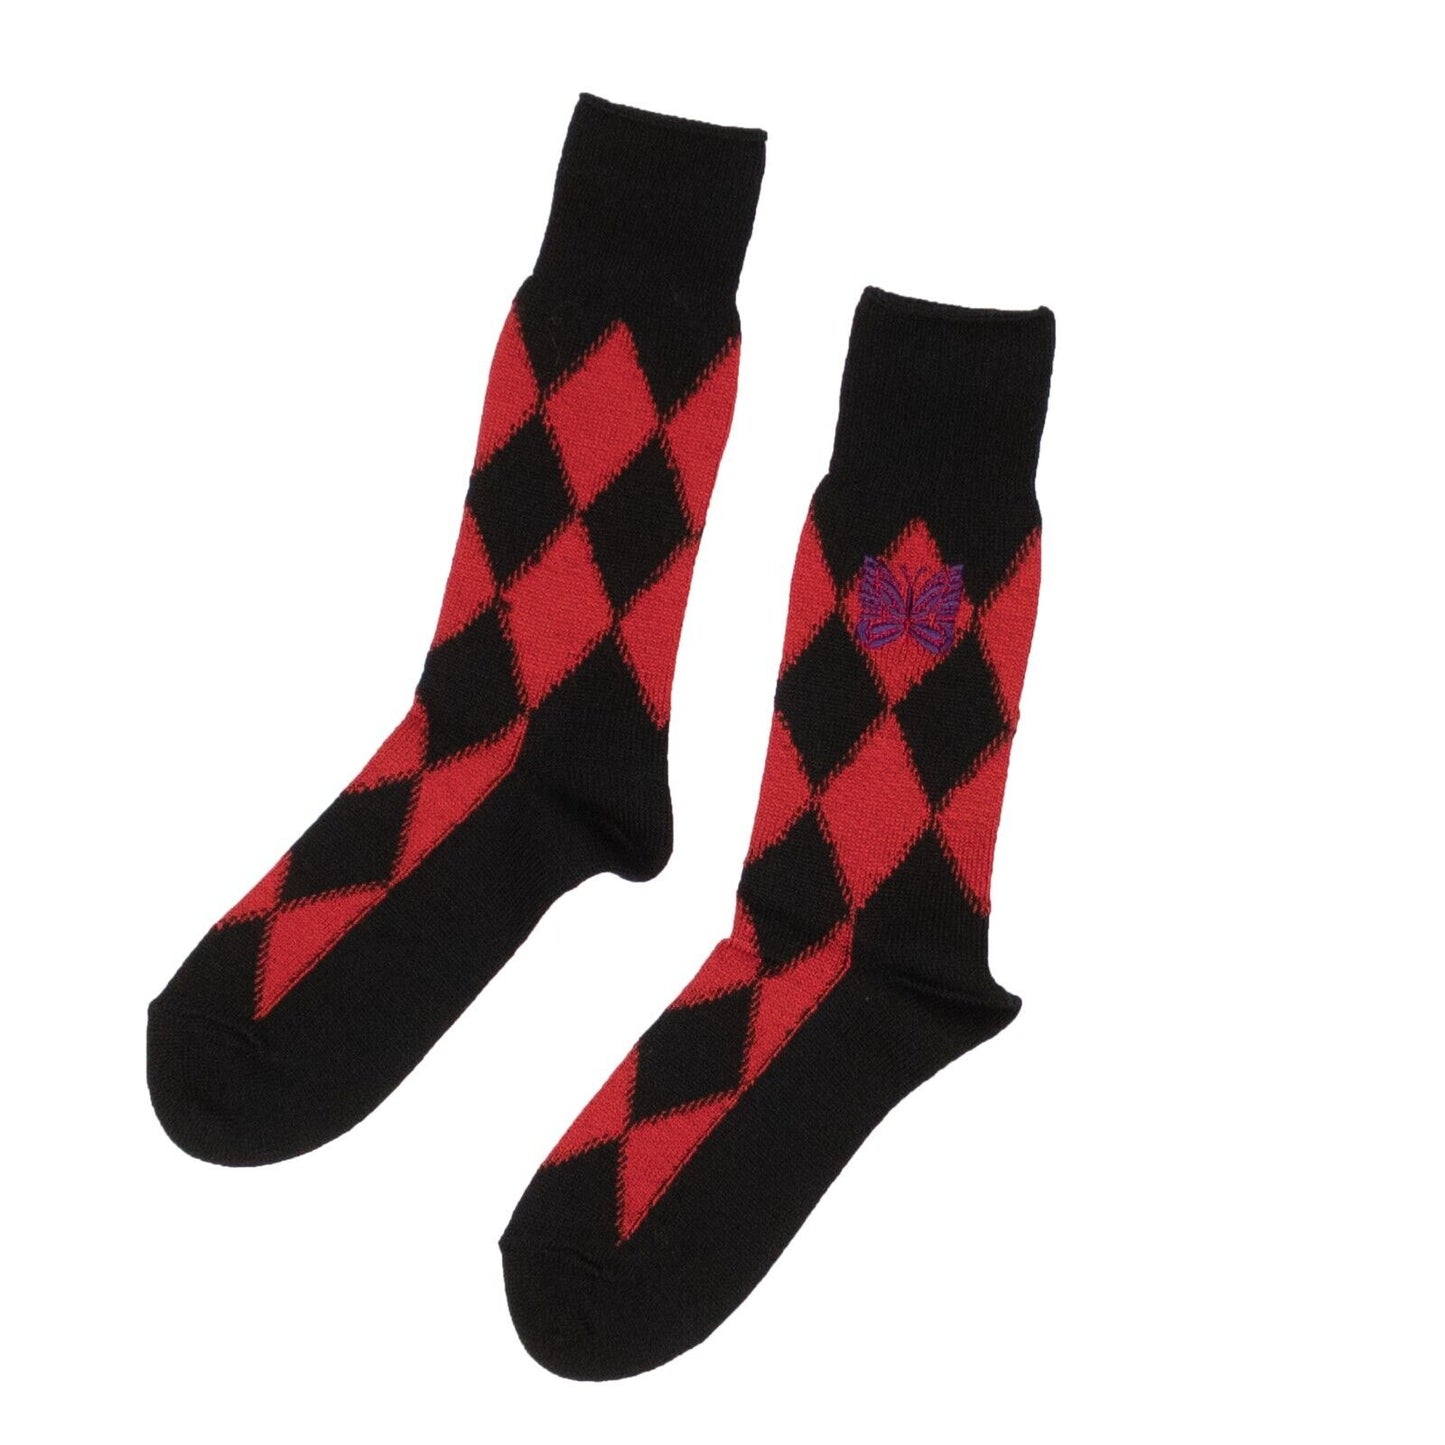 Needles Argyle Socks - Black/Red